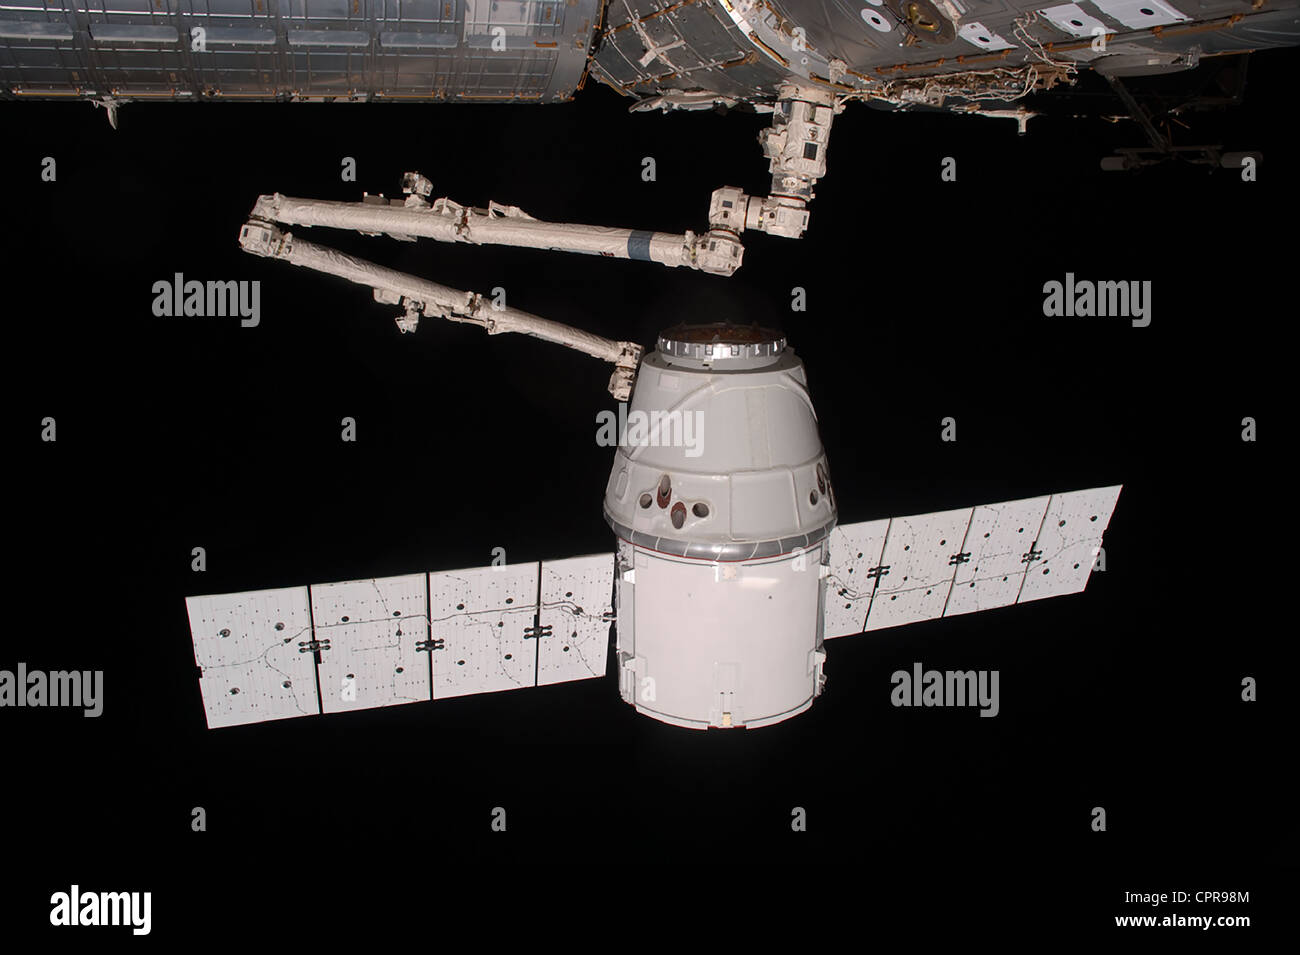 La SpaceX Dragon commerciale cargo craft è agganciato mediante il braccio robotico alla Stazione Spaziale Internazionale il 25 maggio 2012. Dragon è diventato il primo commercialmente sviluppato un veicolo spaziale ad essere lanciato verso la ISS. Foto Stock